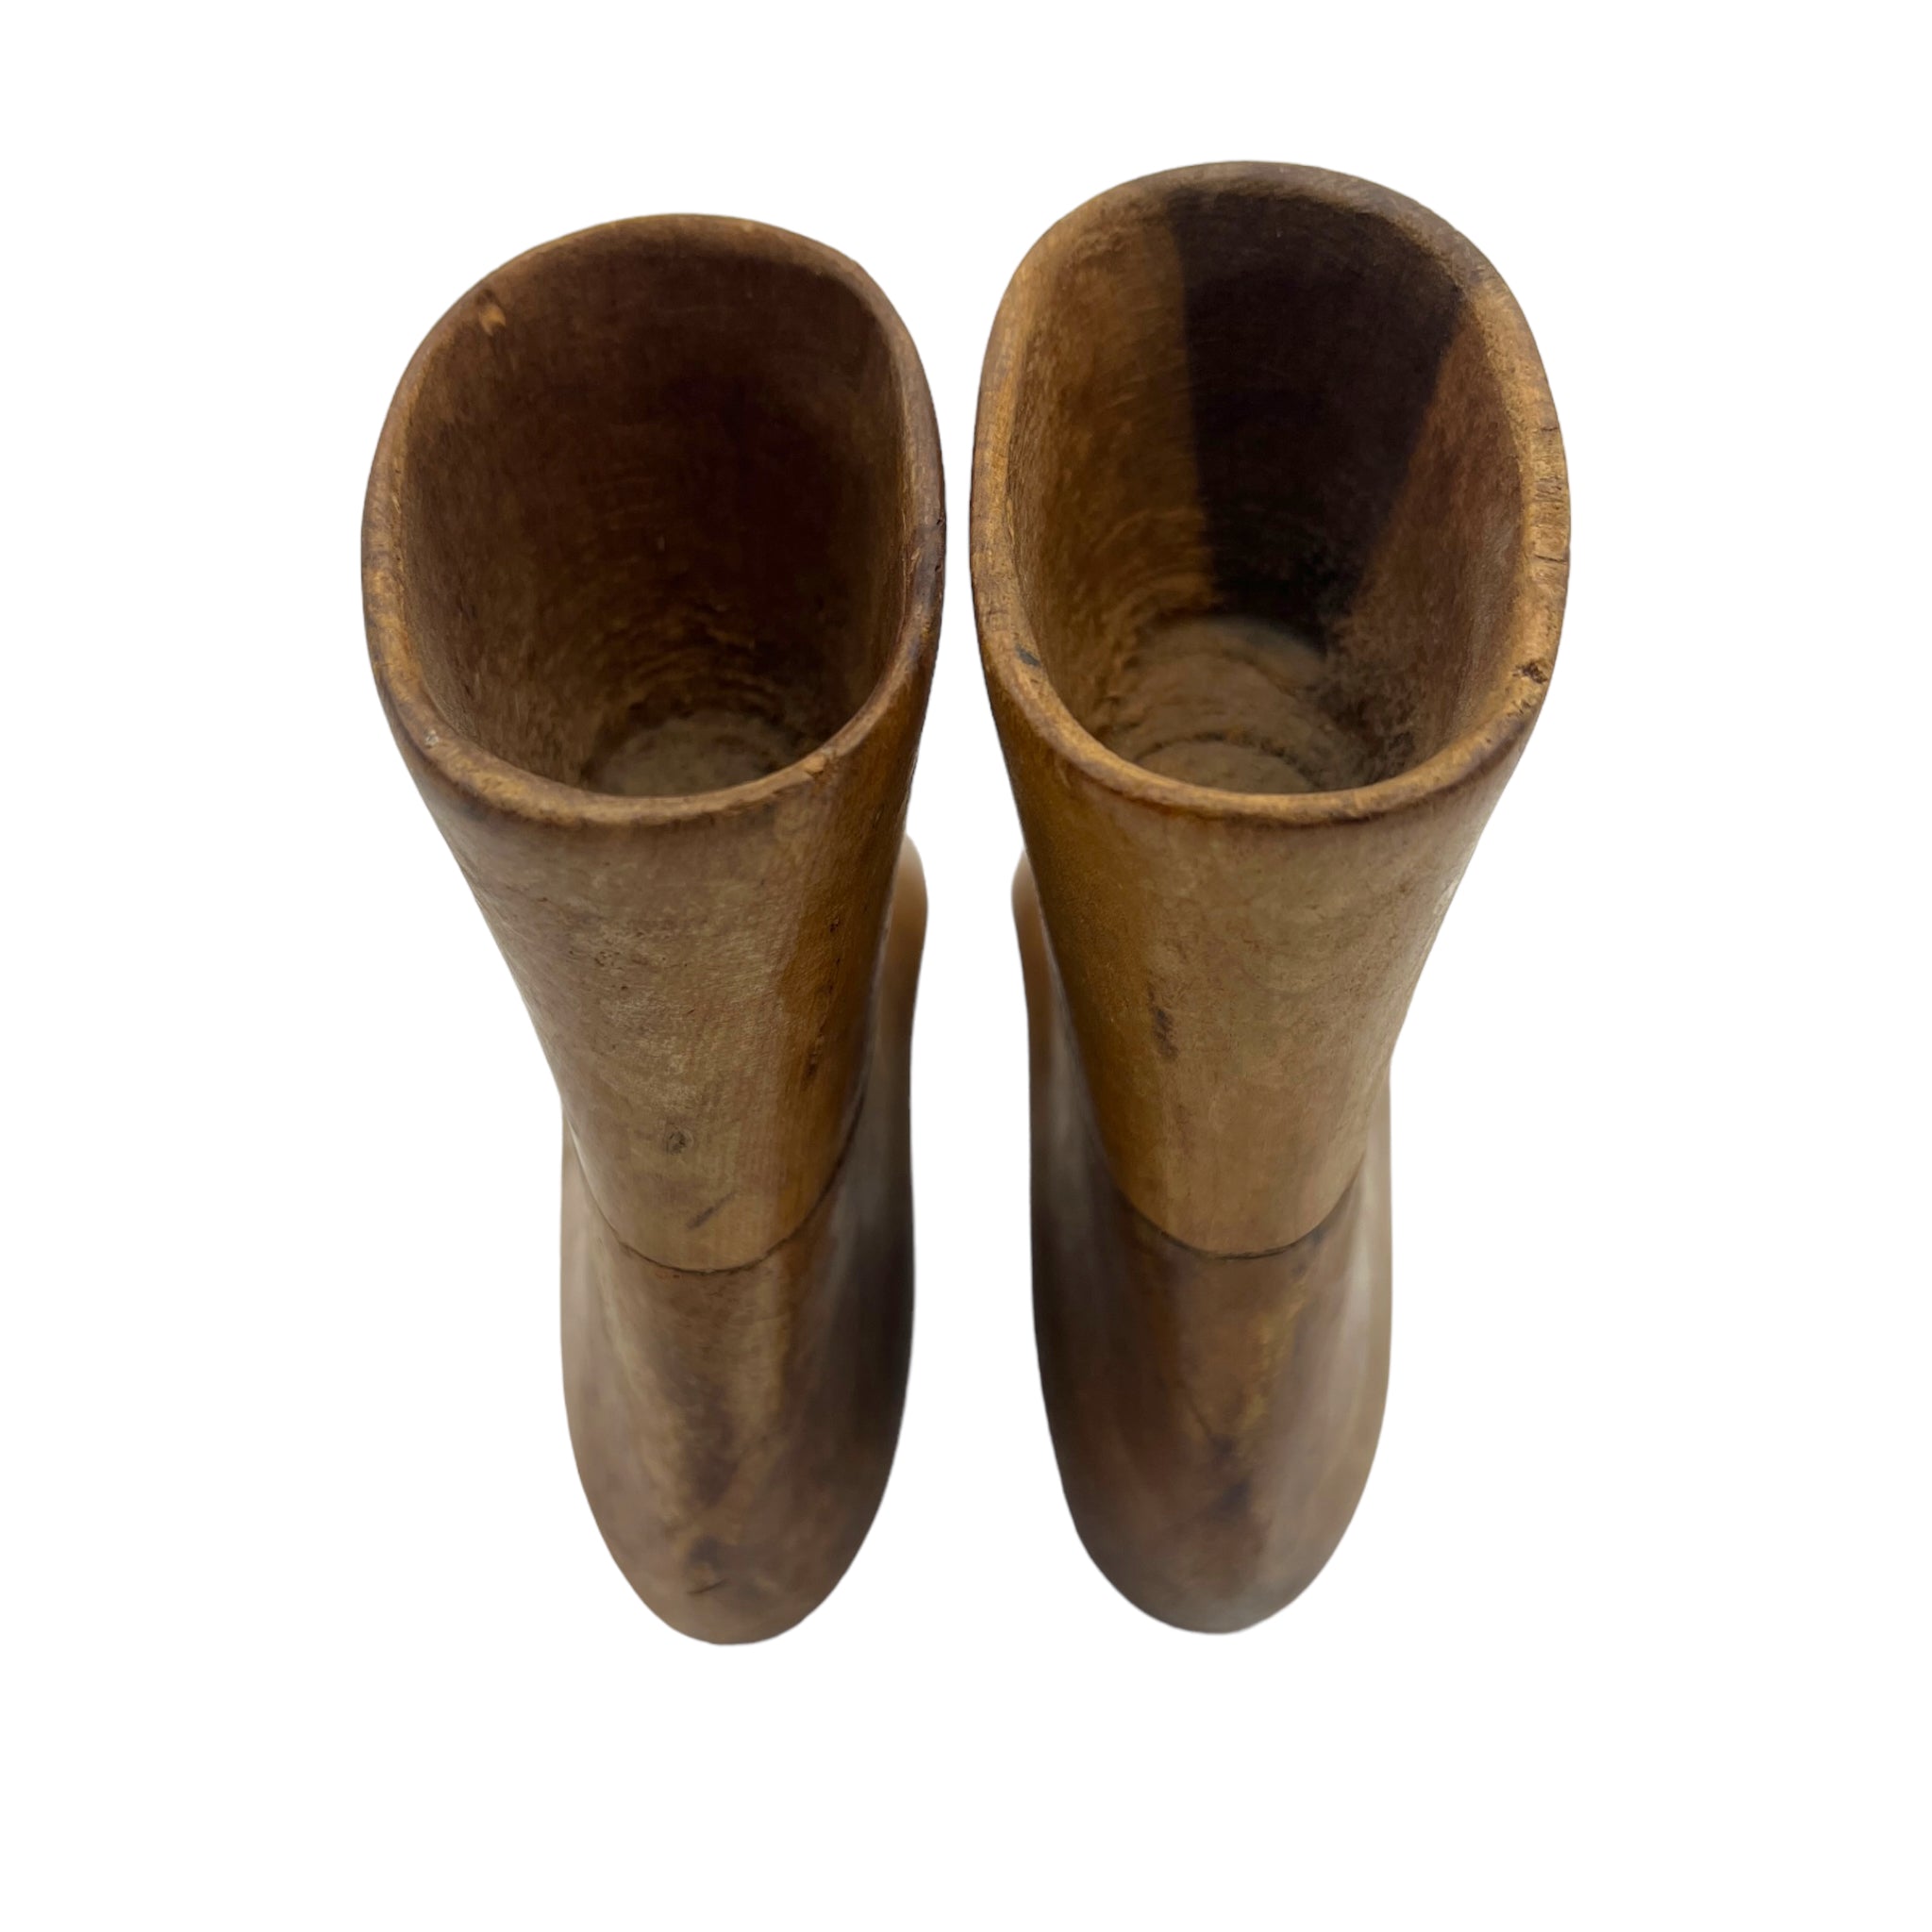 Antique Wooden Cobbler's Shoe Form Pair